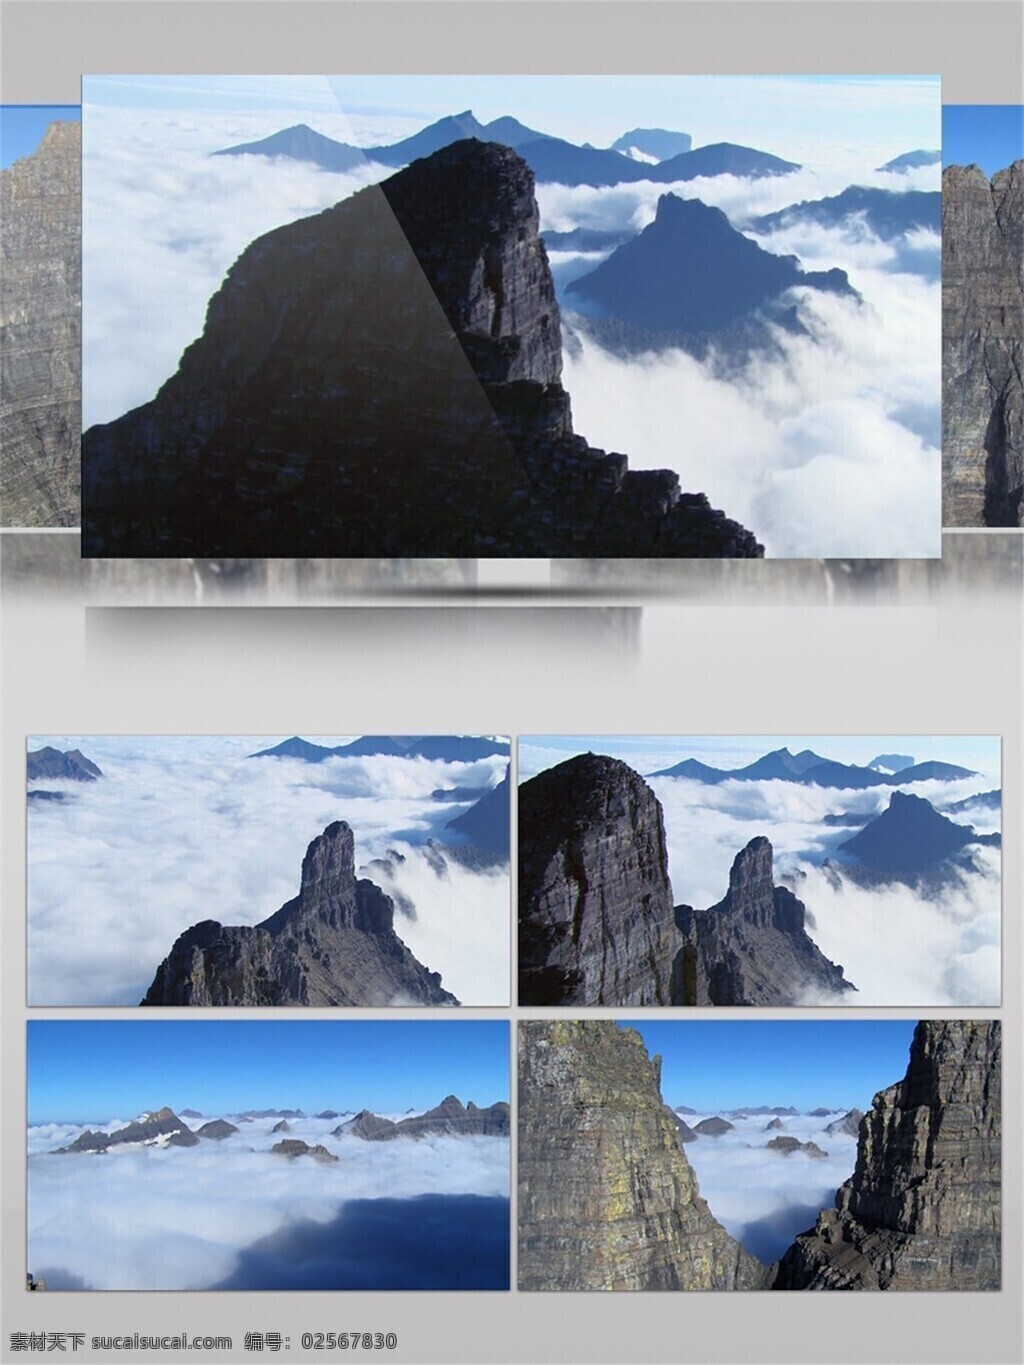 宏伟 冰川 景色 视频 音效 云层 蓝天 岩石 壮观 仙境 视频音效 赞叹